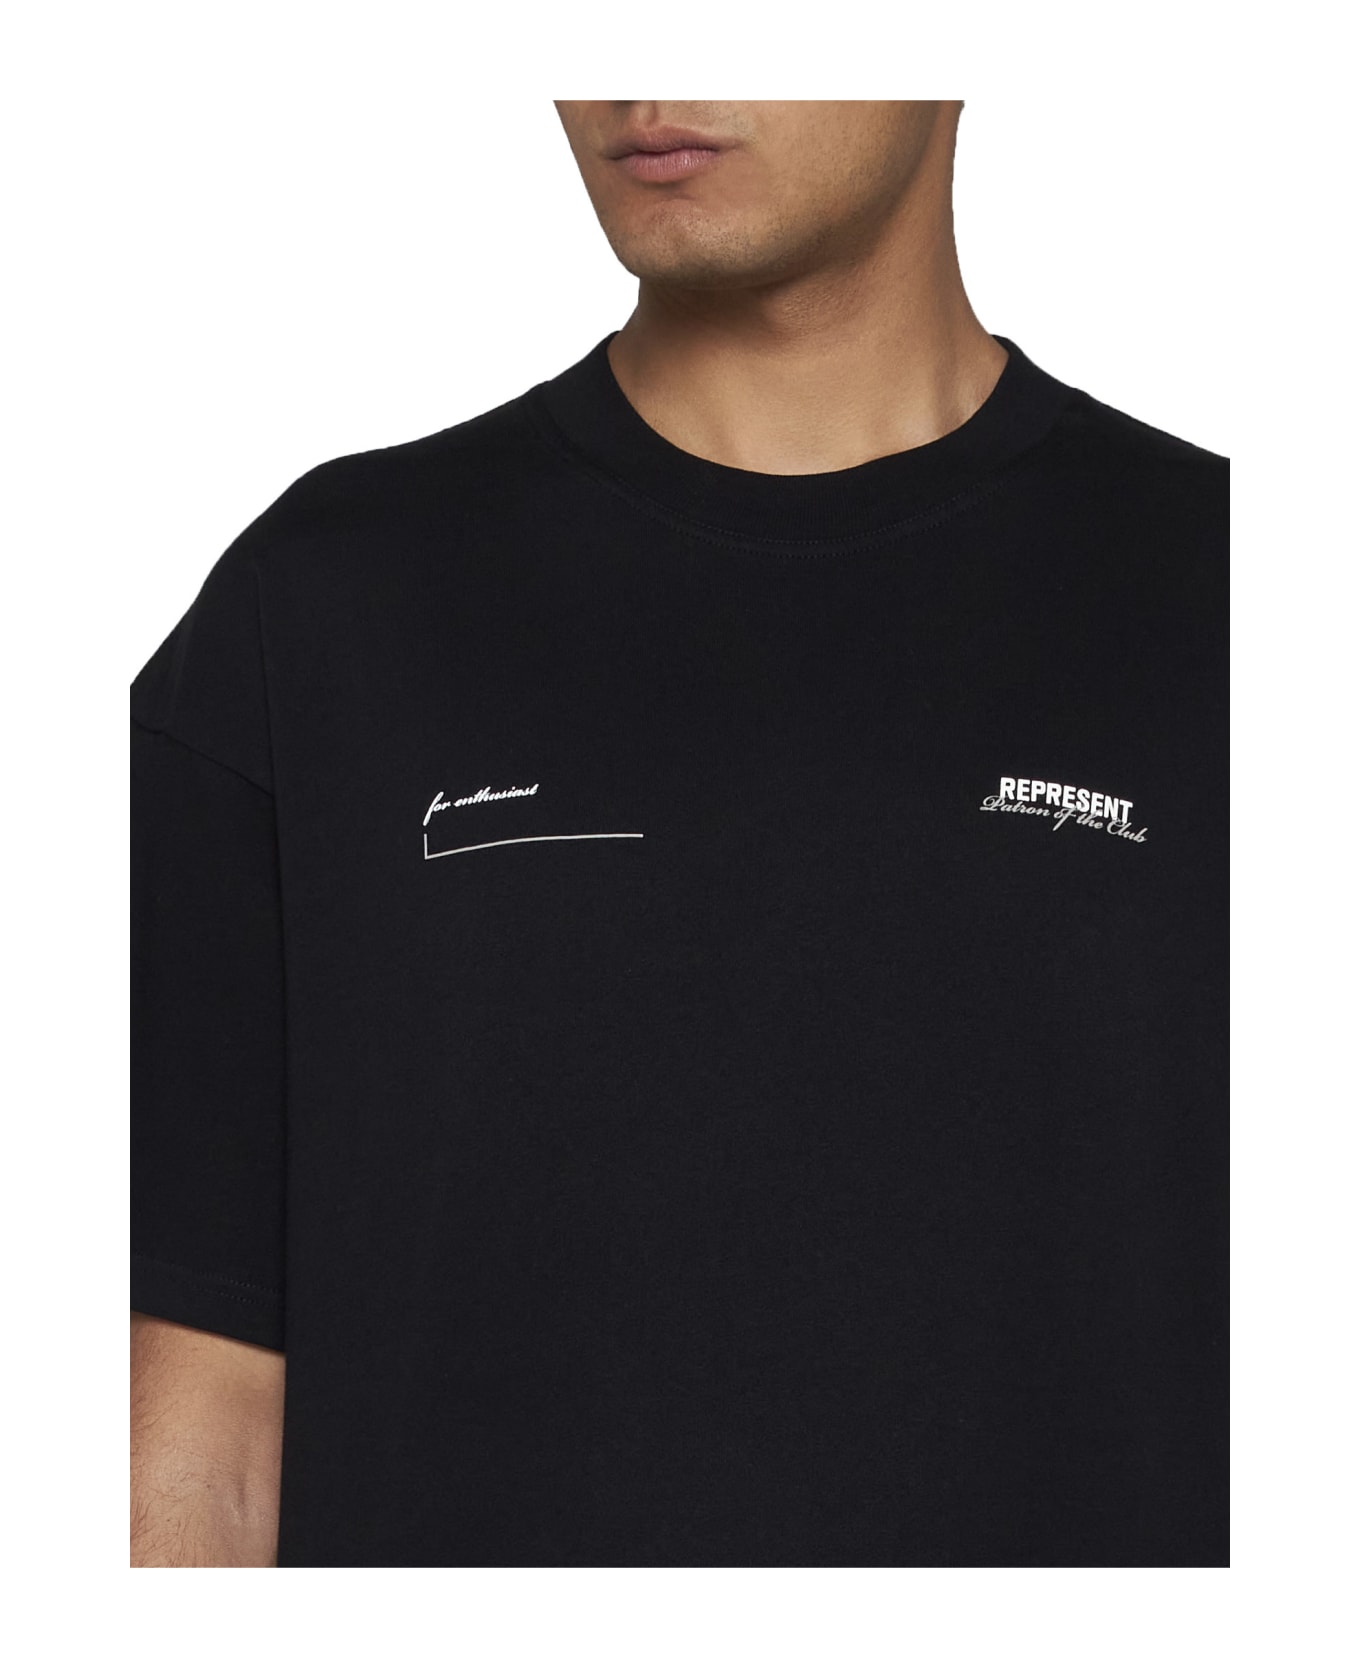 REPRESENT T-Shirt - Black